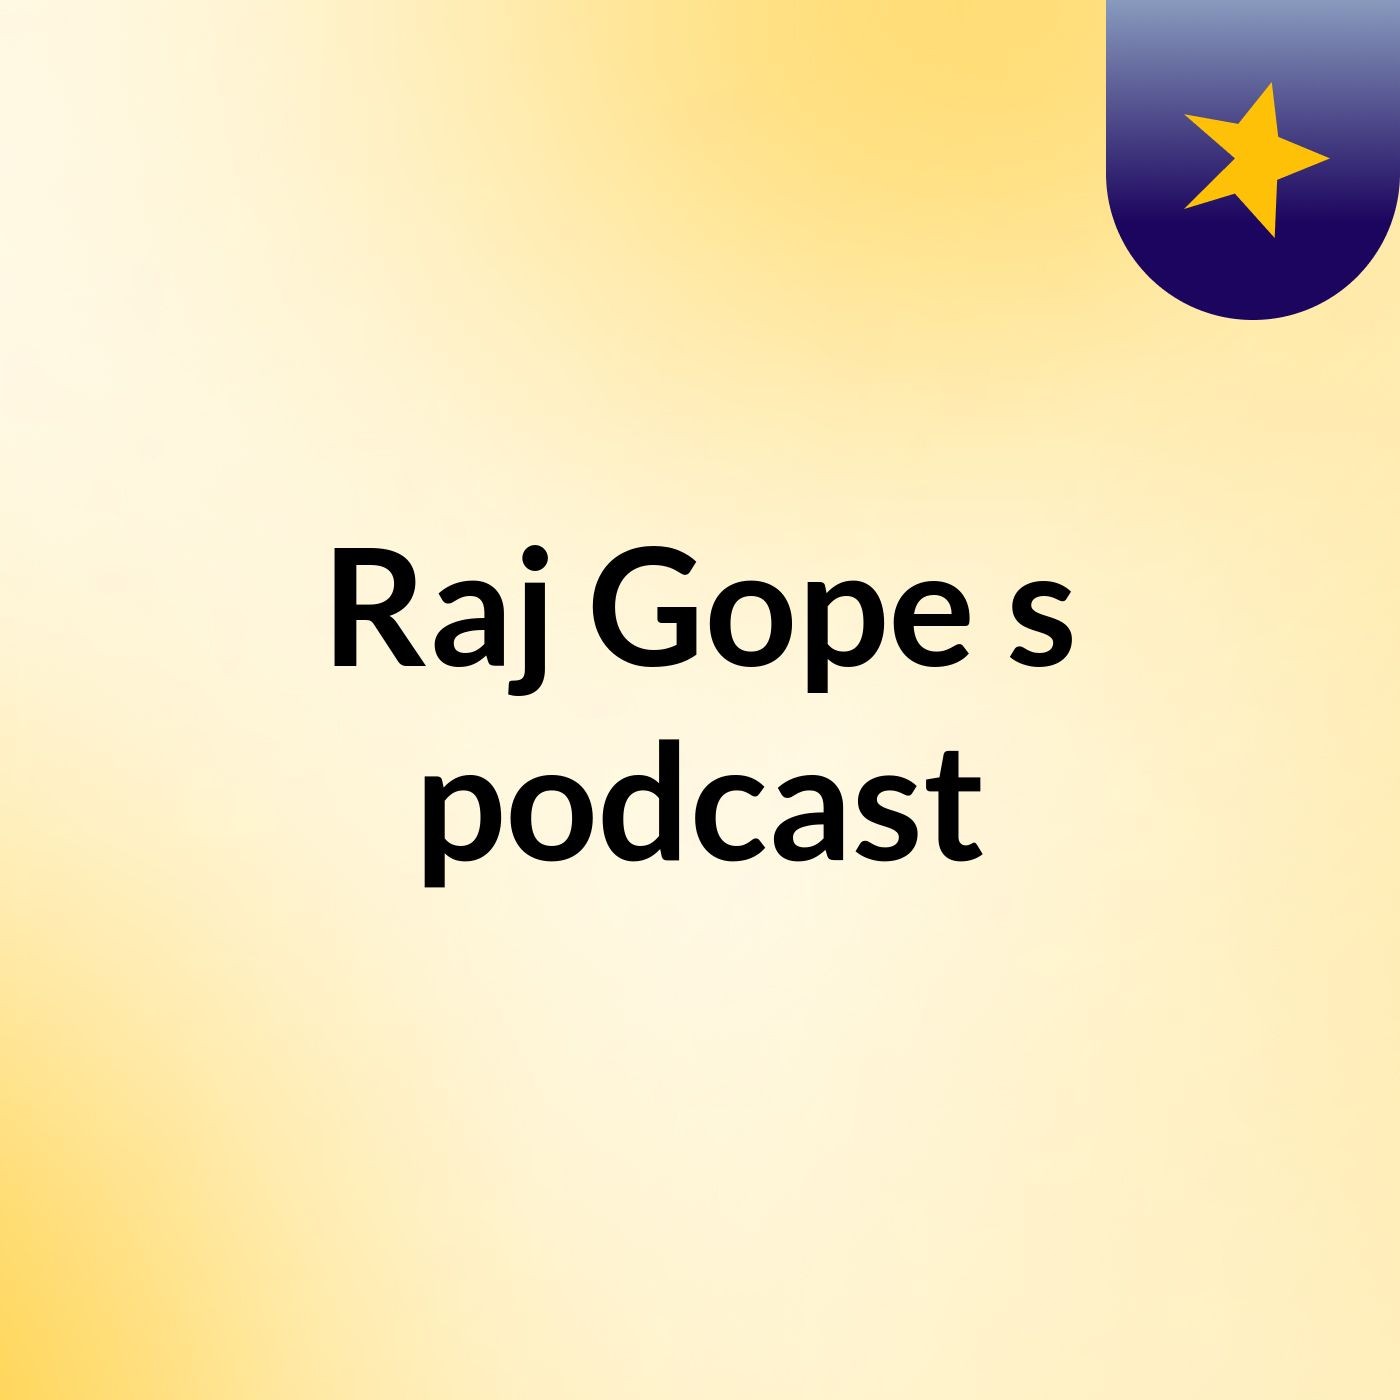 Raj Gope's podcast